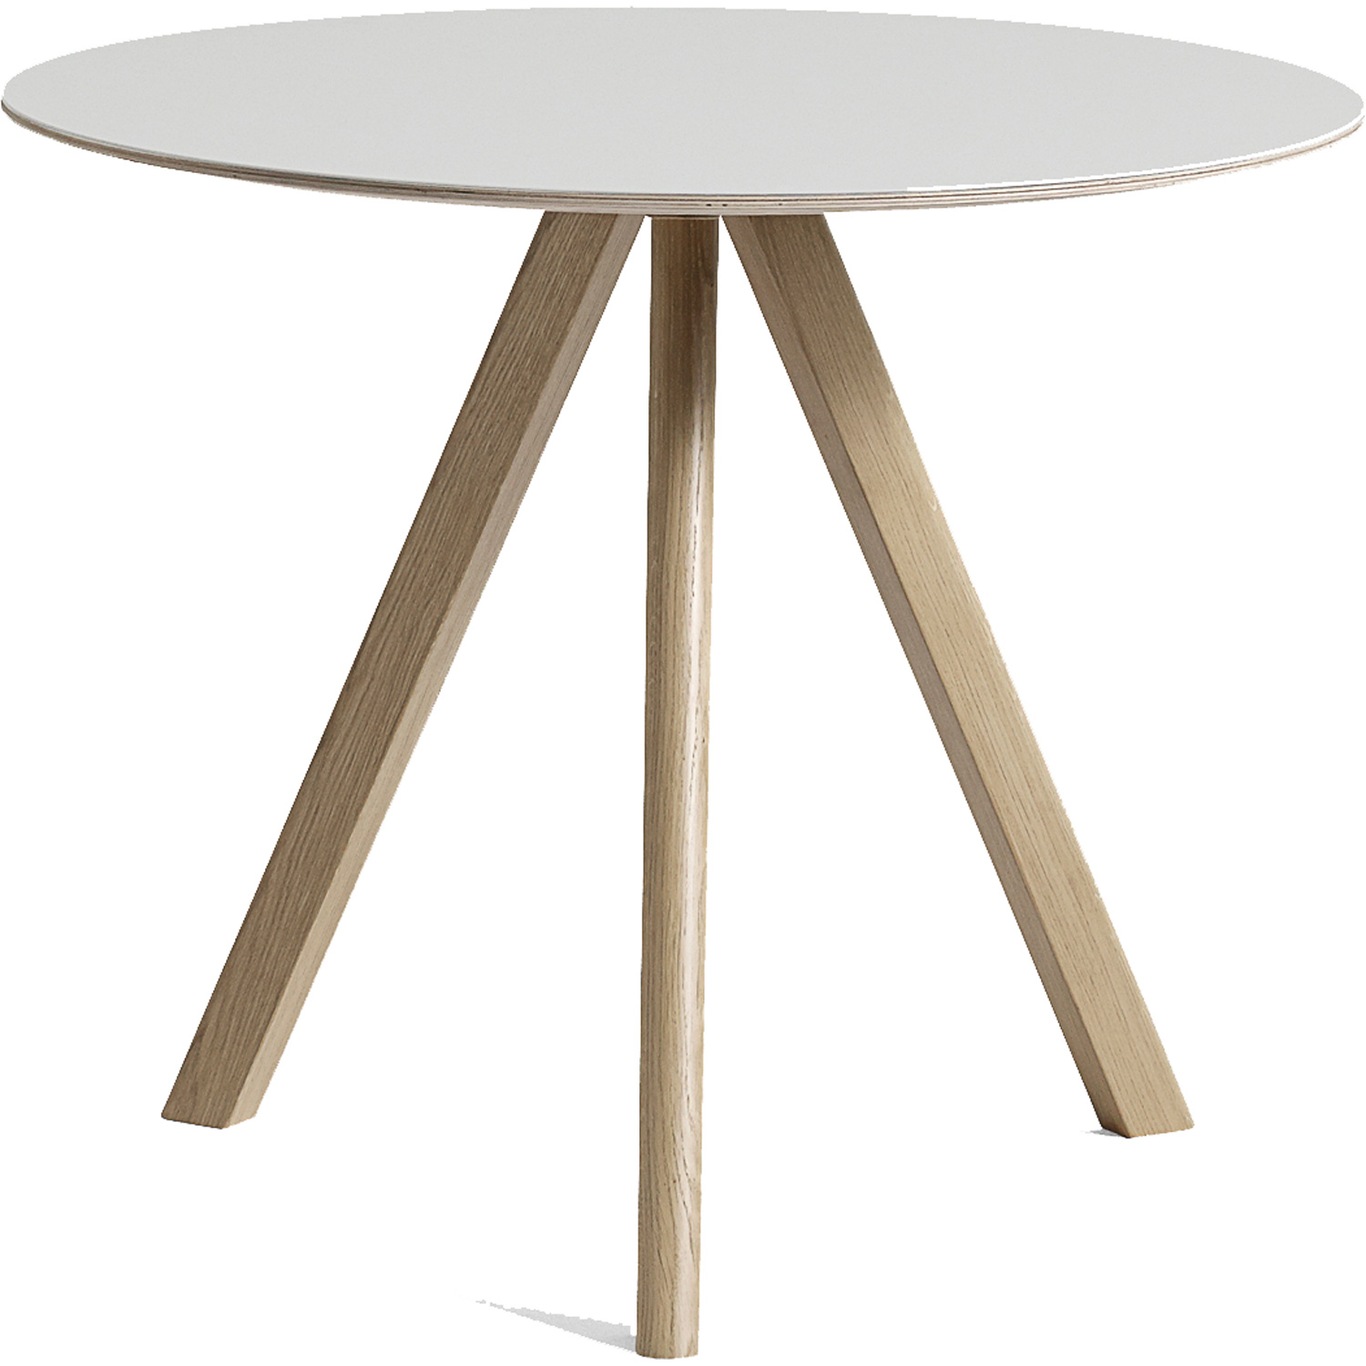 CPH20 Tisch Ø90x74 cm, Mit Lack auf Wasserbasis lackiert Eiche / Altweiß Linoleum